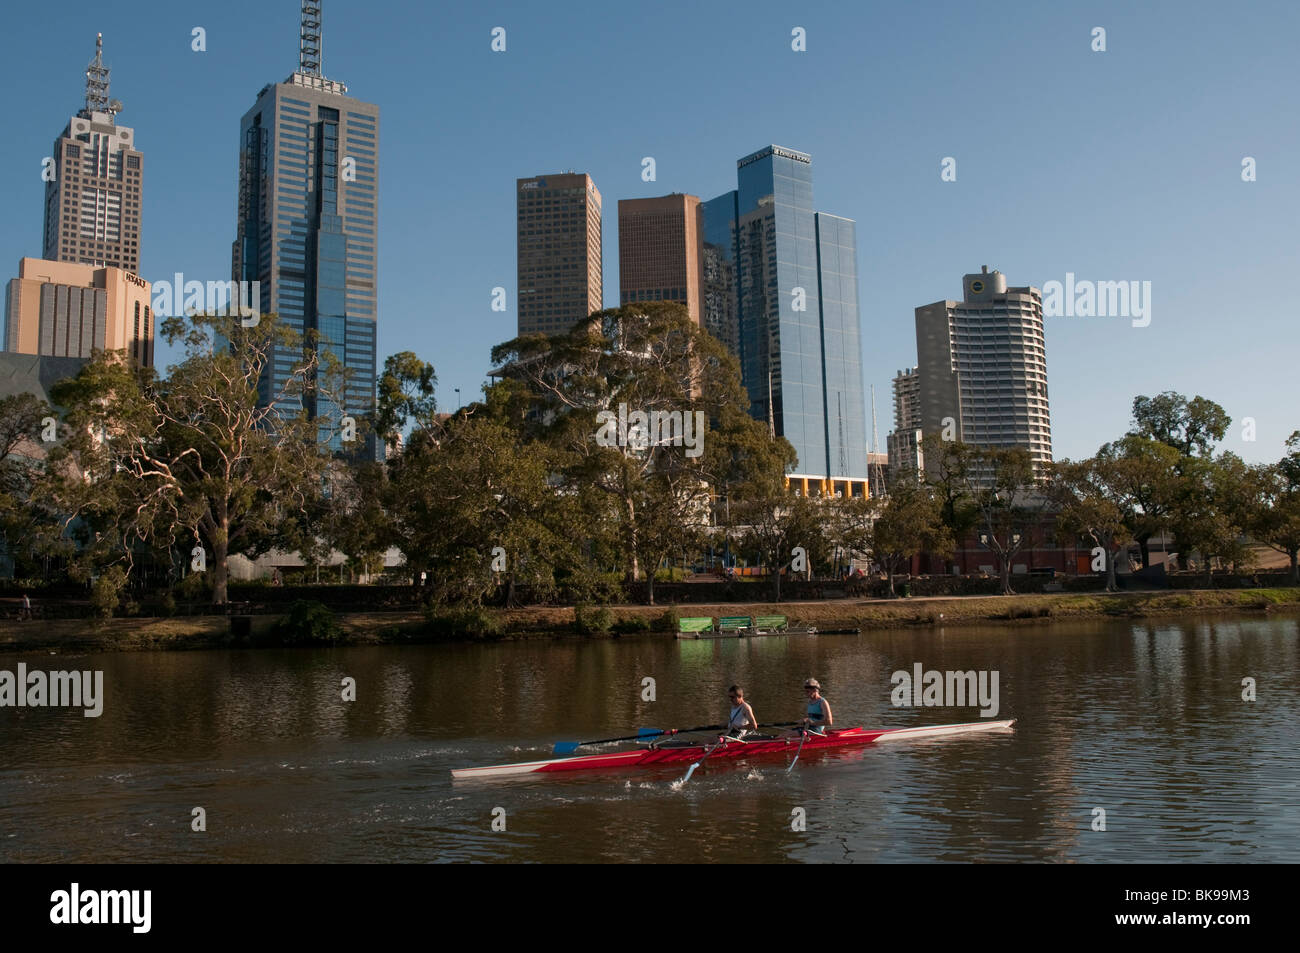 Les équipes d'aviron sur la rivière Yarra de Melbourne, Victoria Australie Banque D'Images